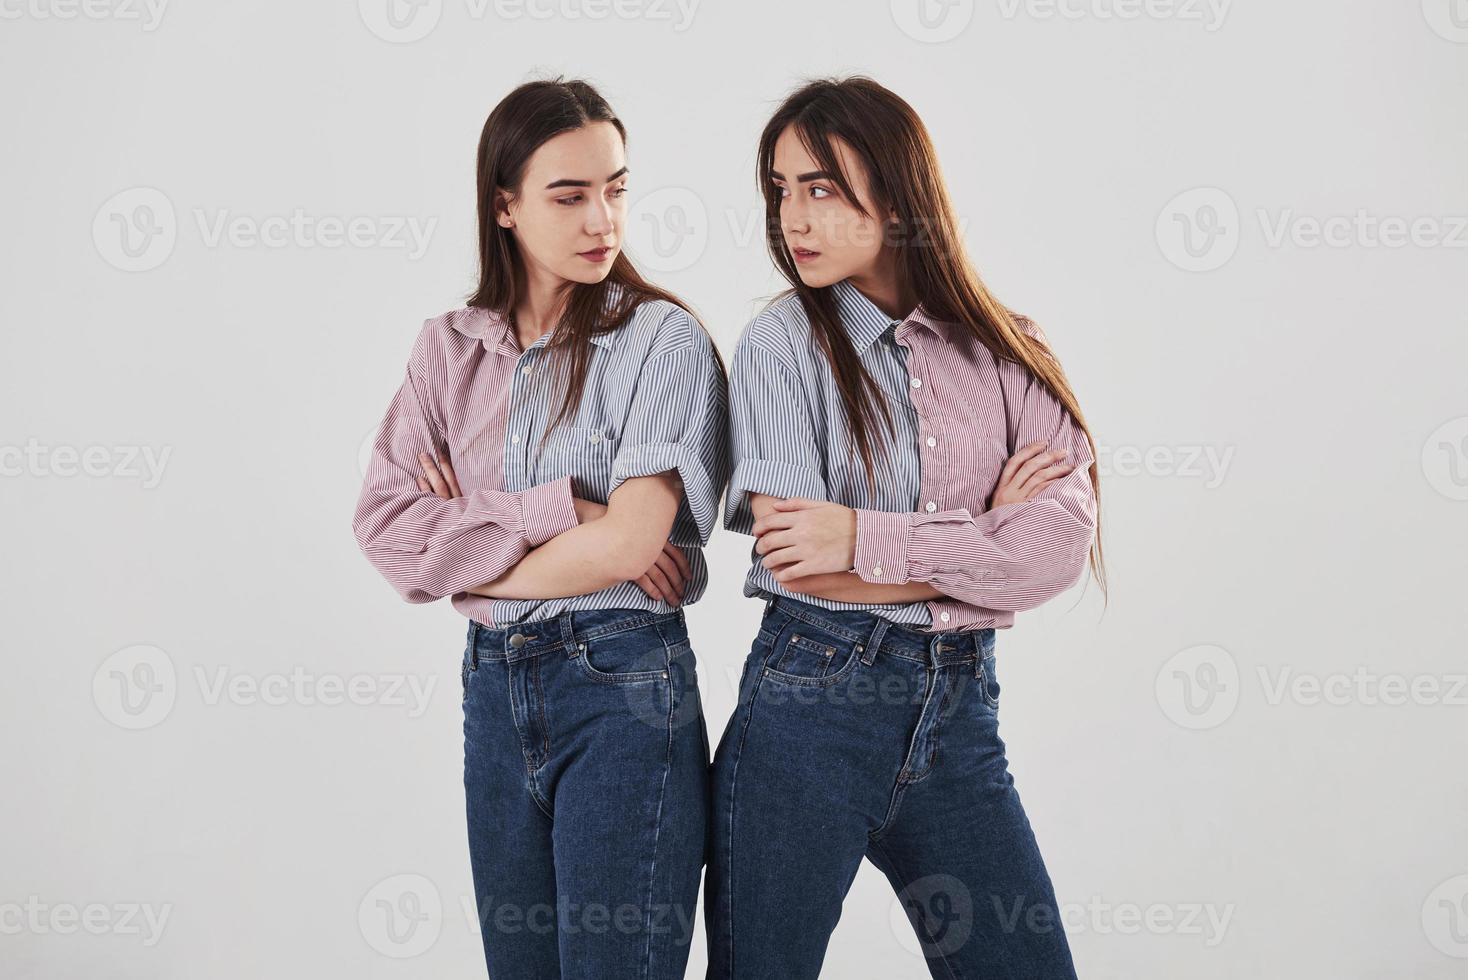 offensé et regarde les autres avec colère. deux soeurs jumelles debout et posant en studio avec fond blanc photo